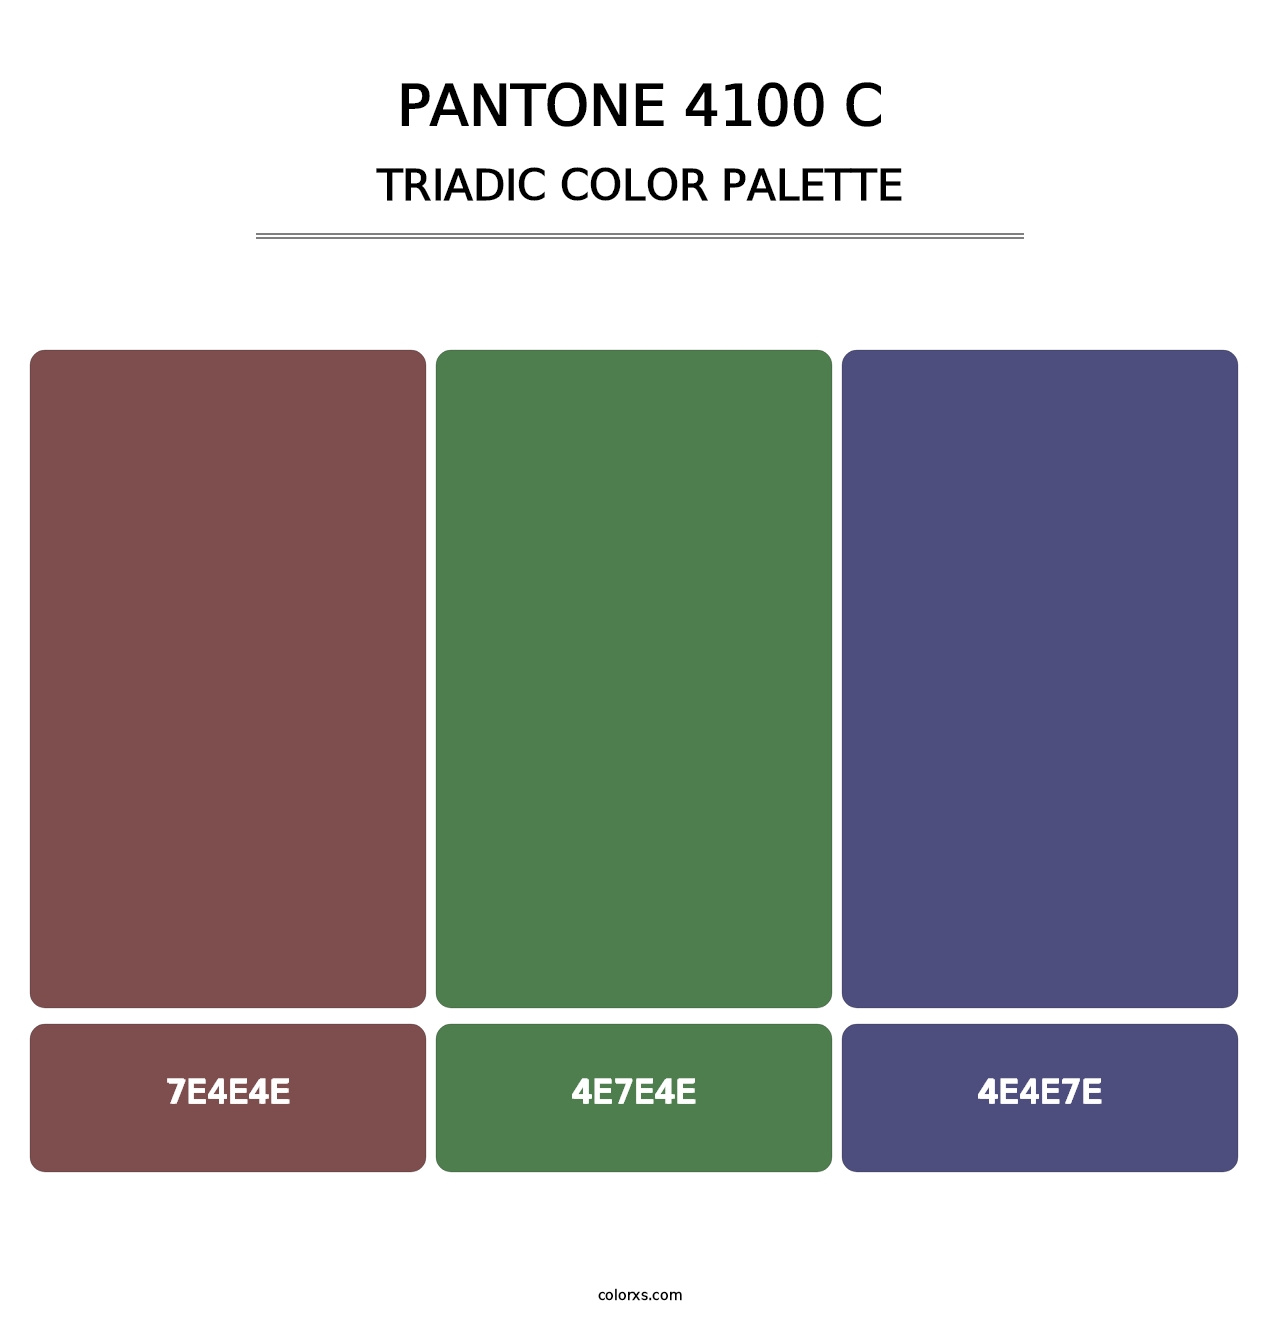 PANTONE 4100 C - Triadic Color Palette